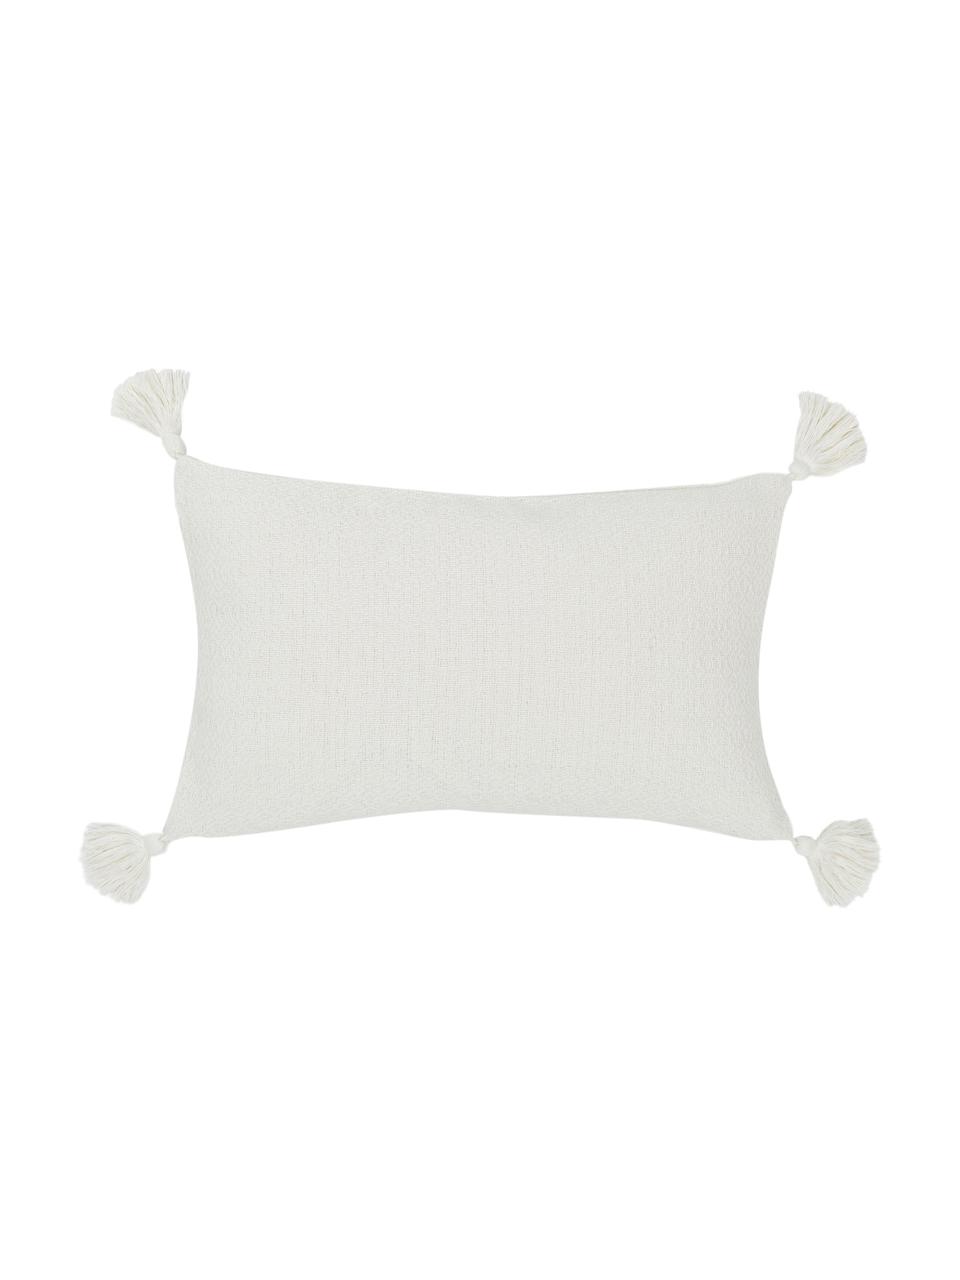 Kissenhülle Lori in Cremeweiß mit dekorativen Quasten, 100% Baumwolle, Weiß, B 30 x L 50 cm